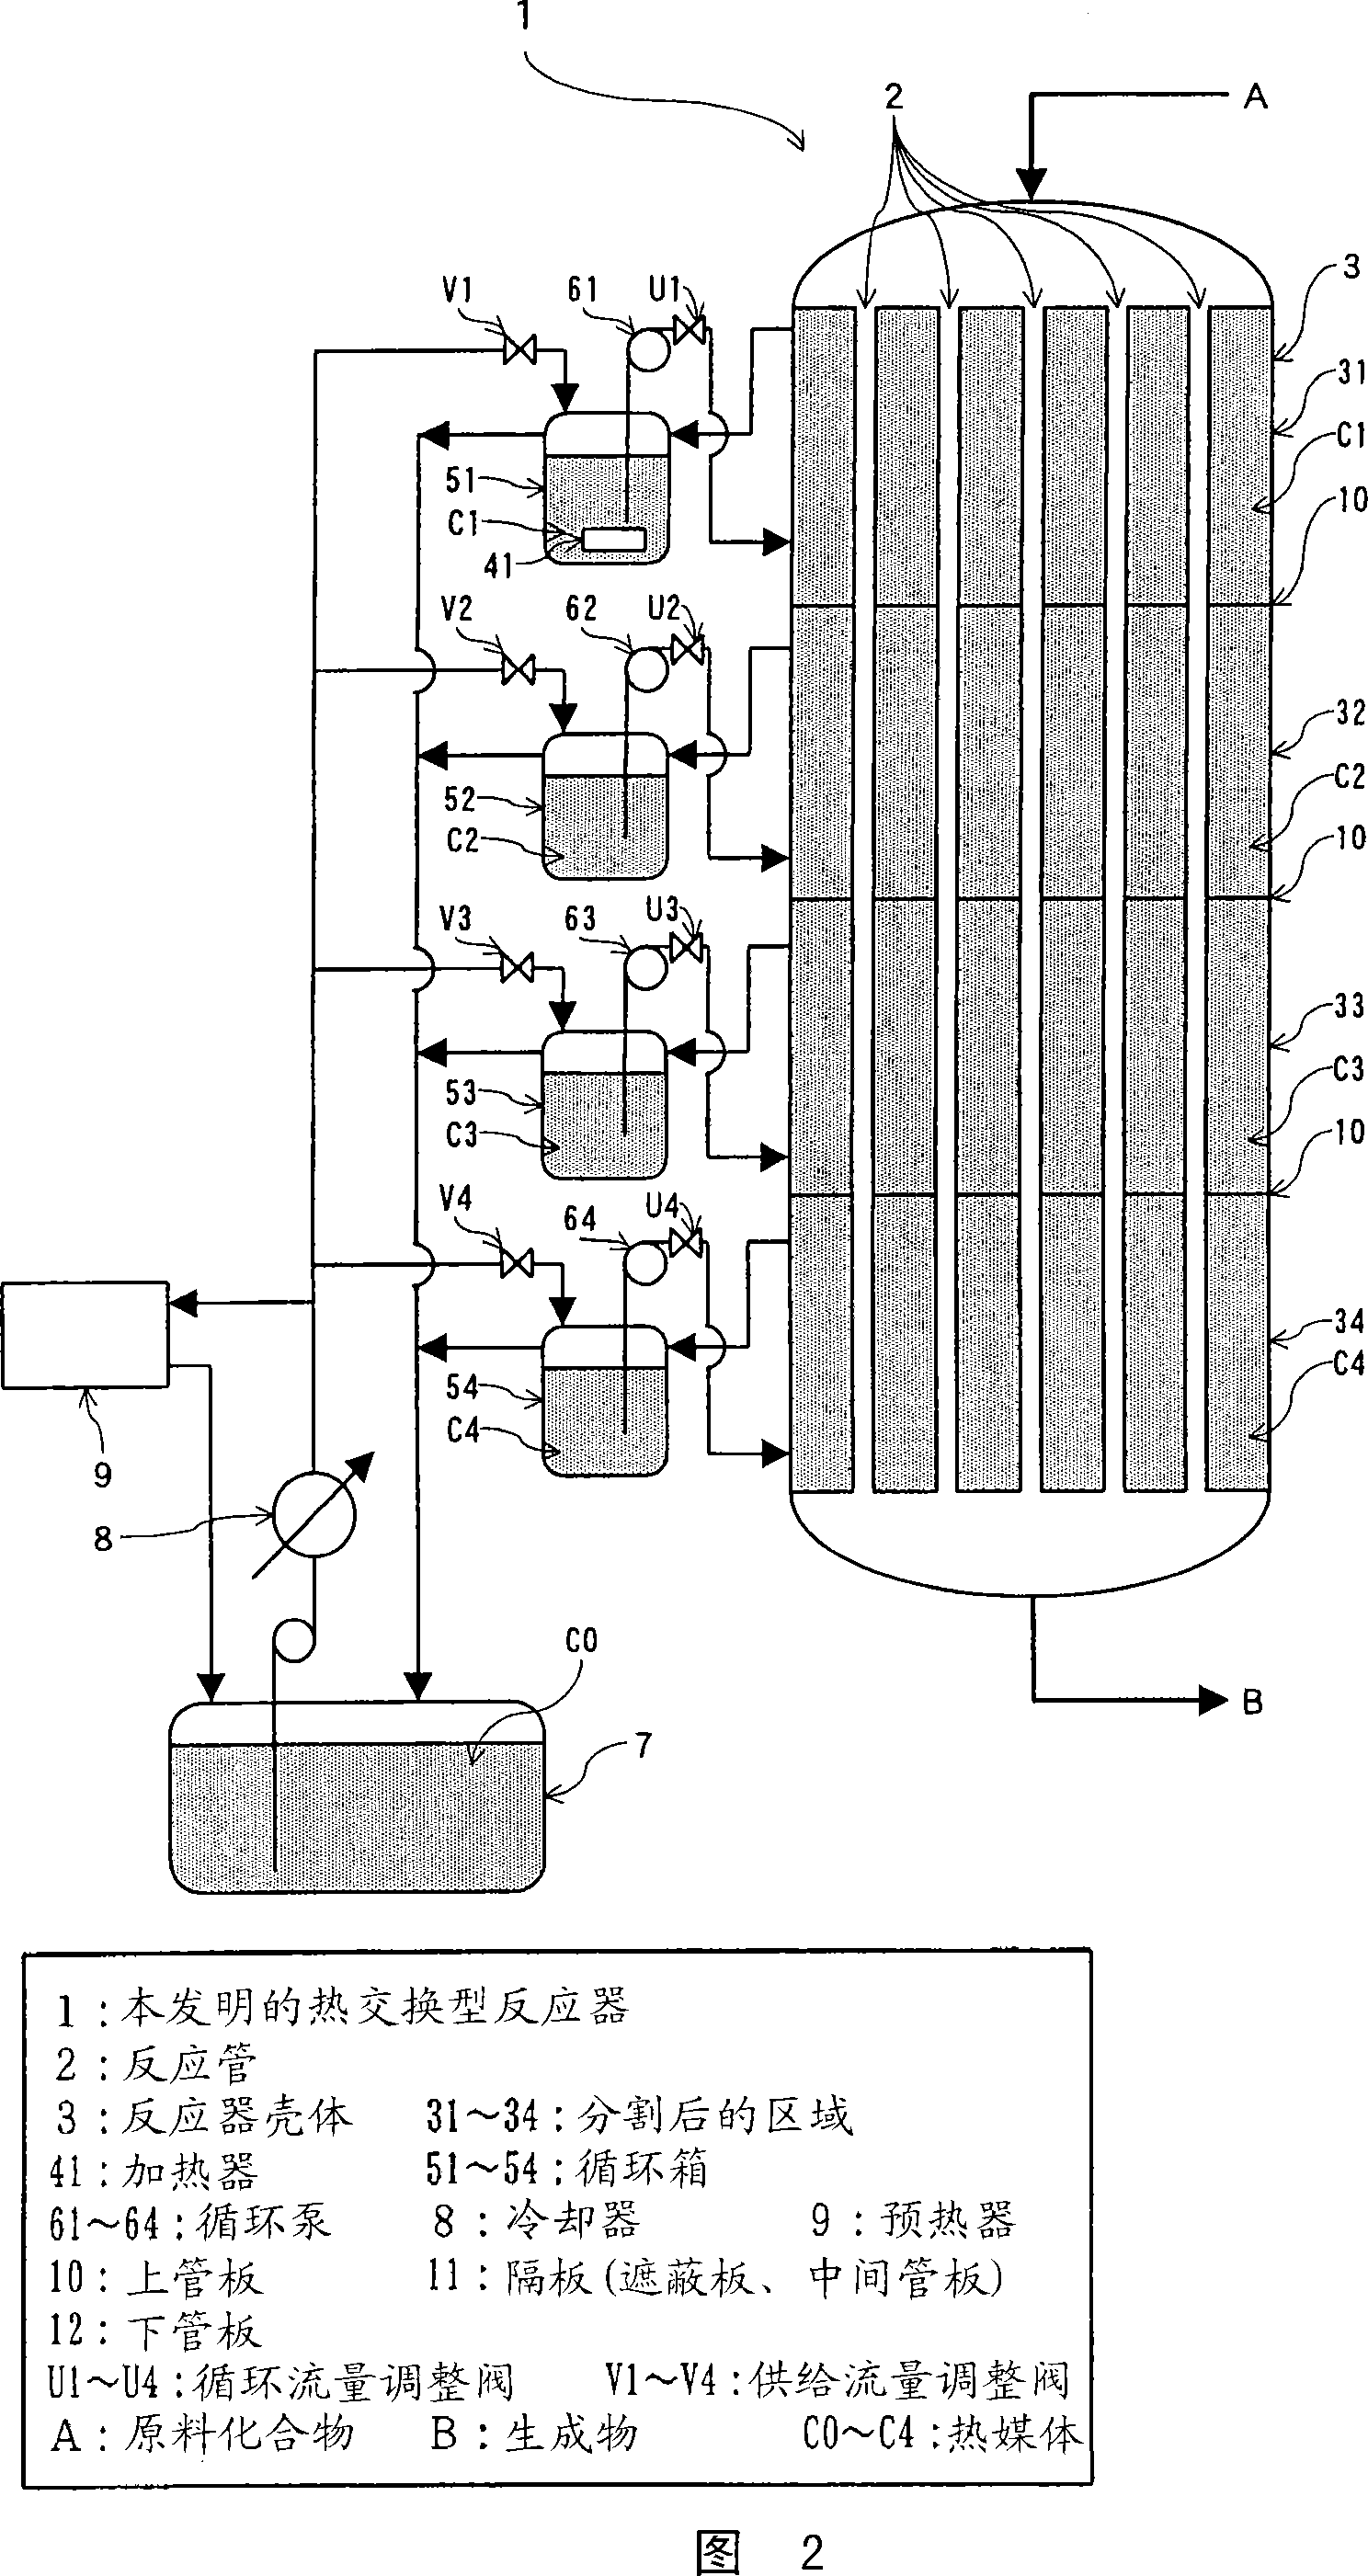 Heat exchange type reactor